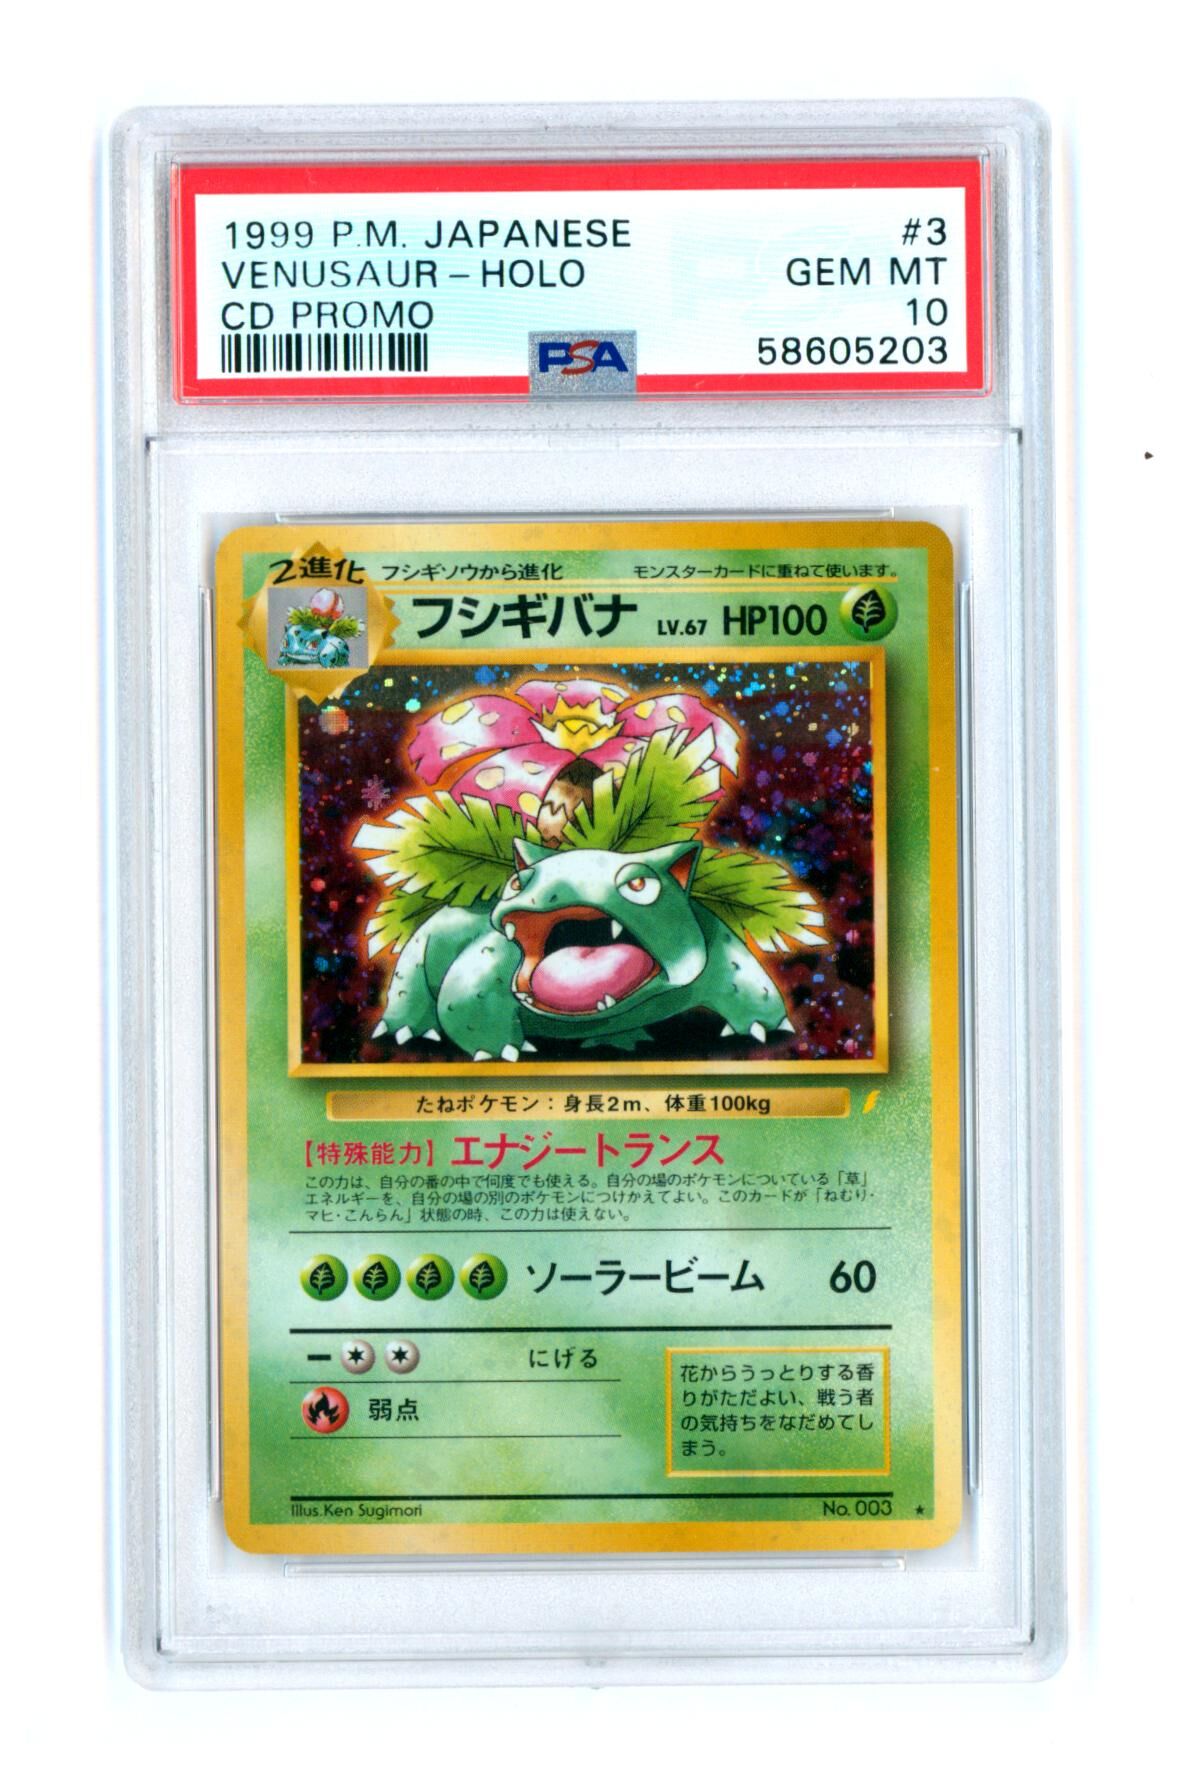 Venusaur #3 - CD Promo - Japanese - Holo - PSA 10 GEM MT - Pokémon